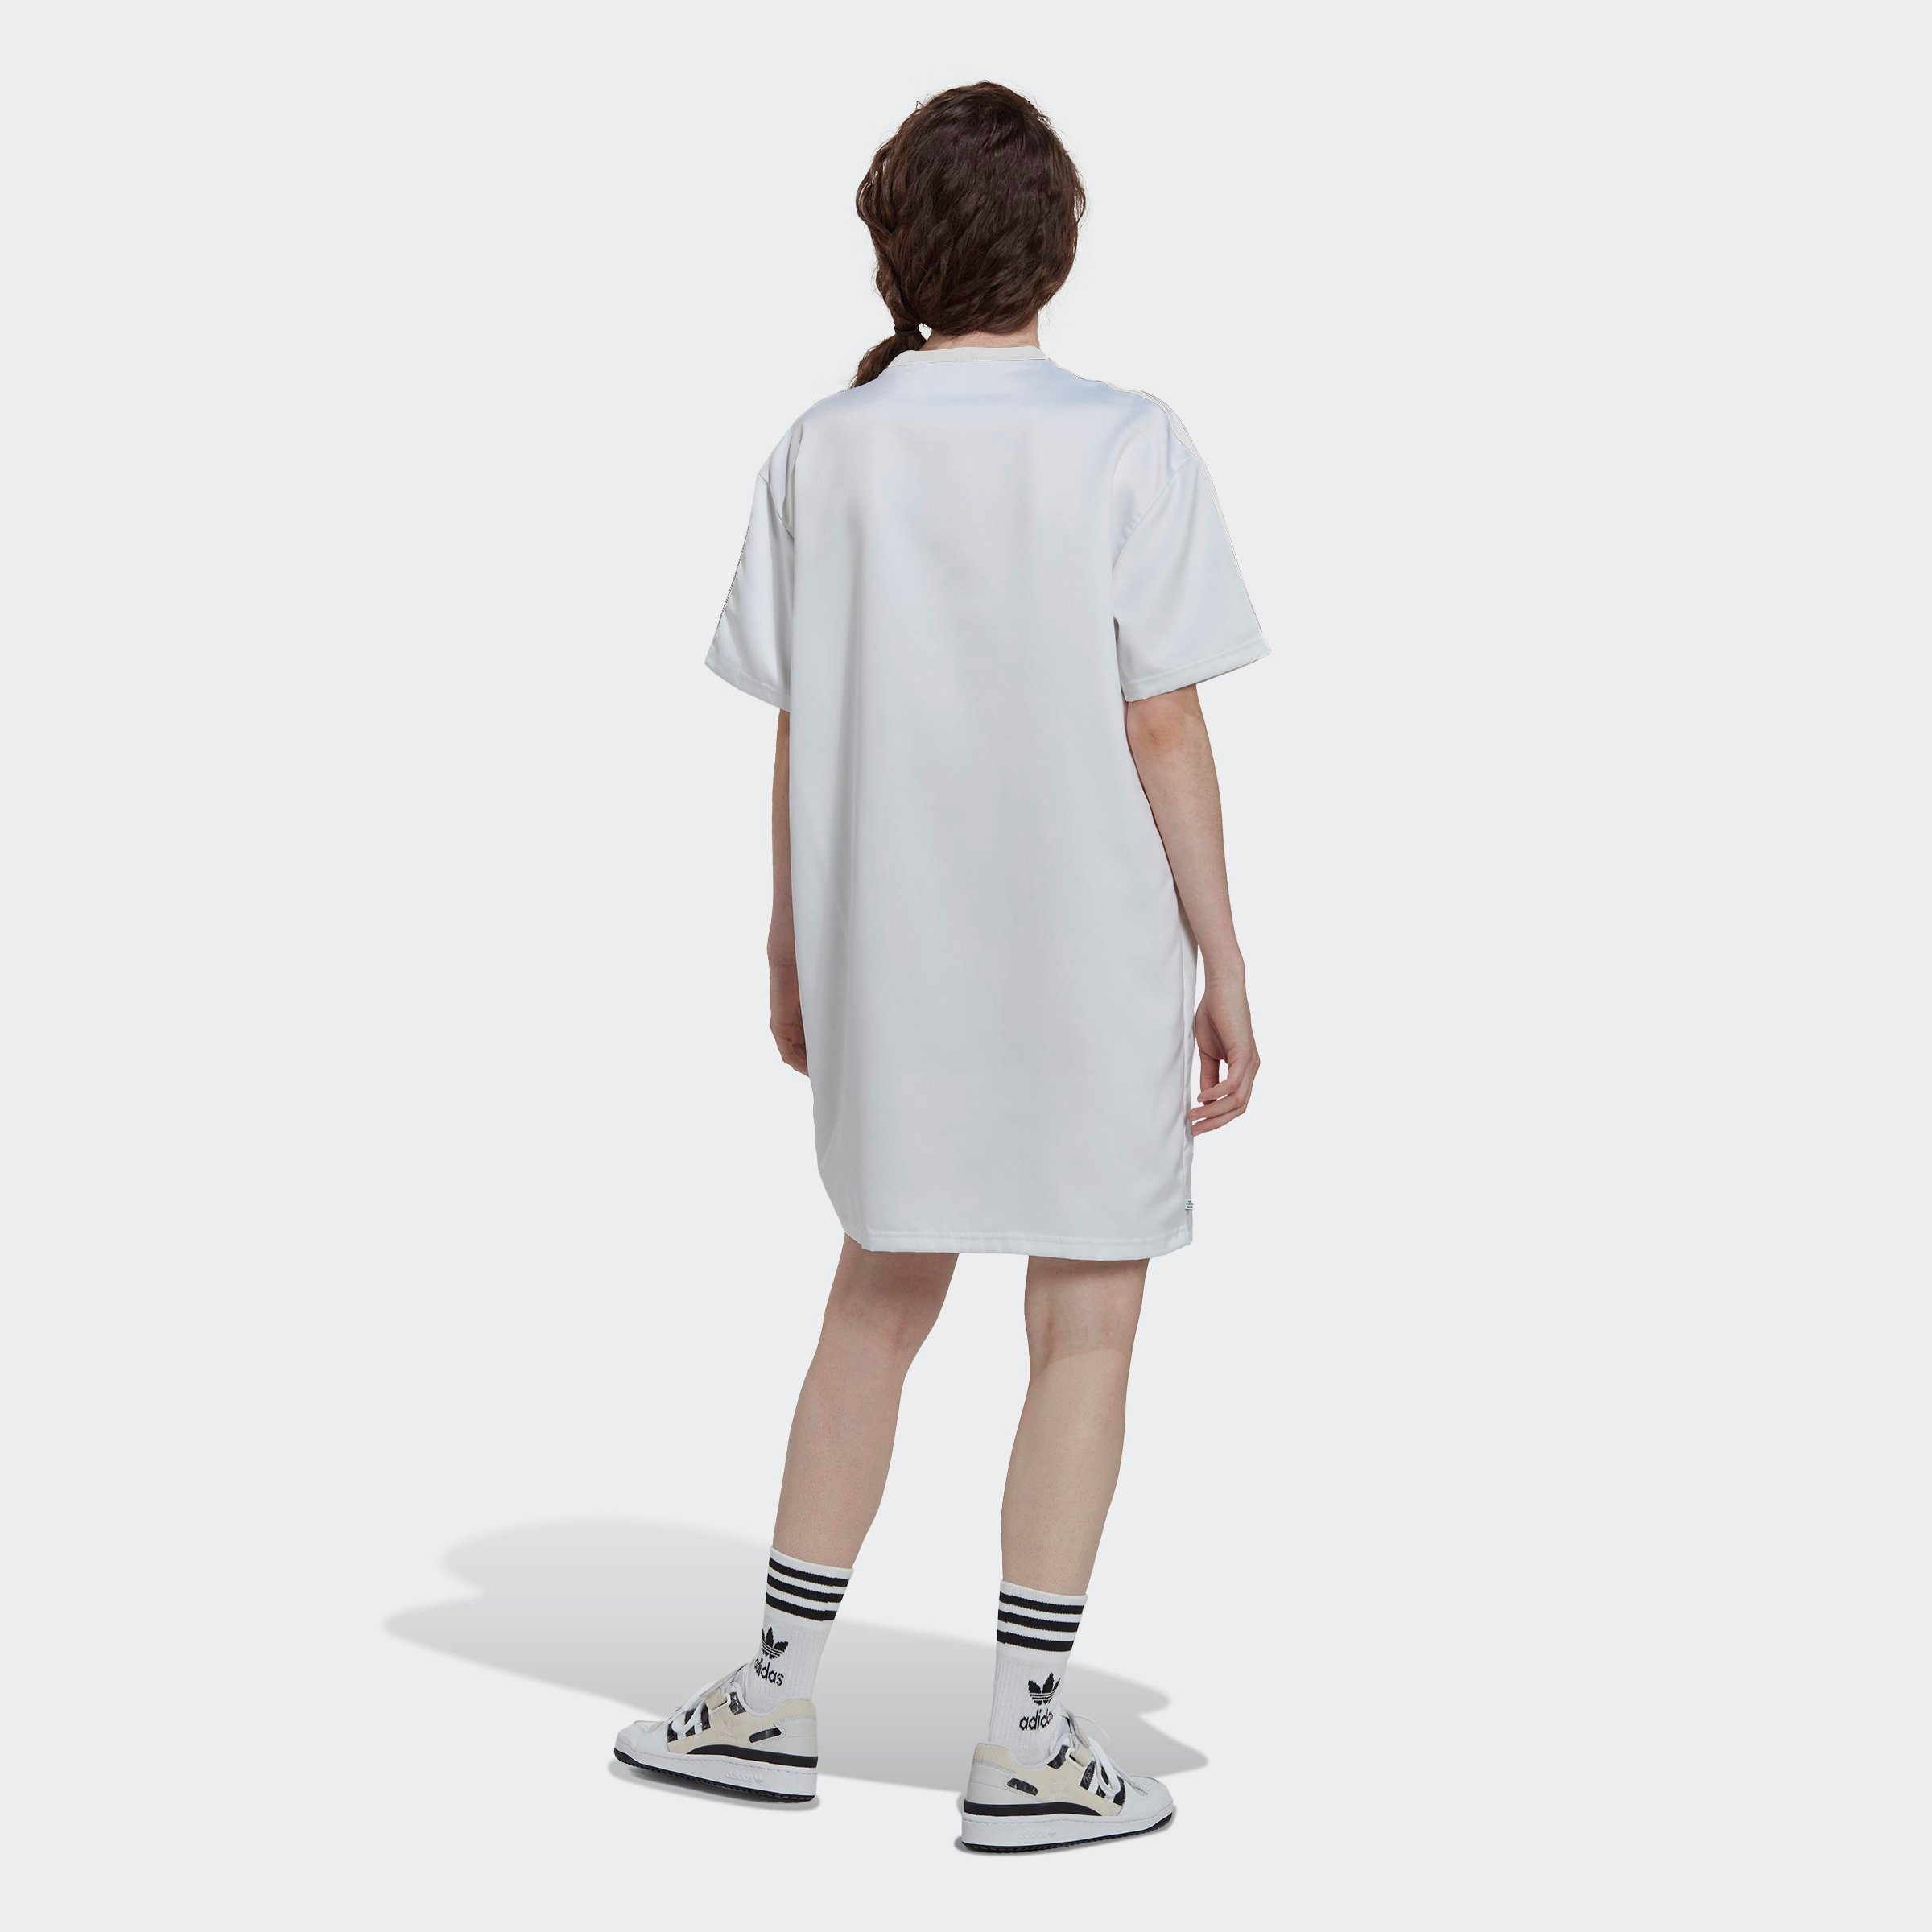 ALWAYS Originals ORIGINAL adidas -KLEID LACED Sommerkleid WHITE